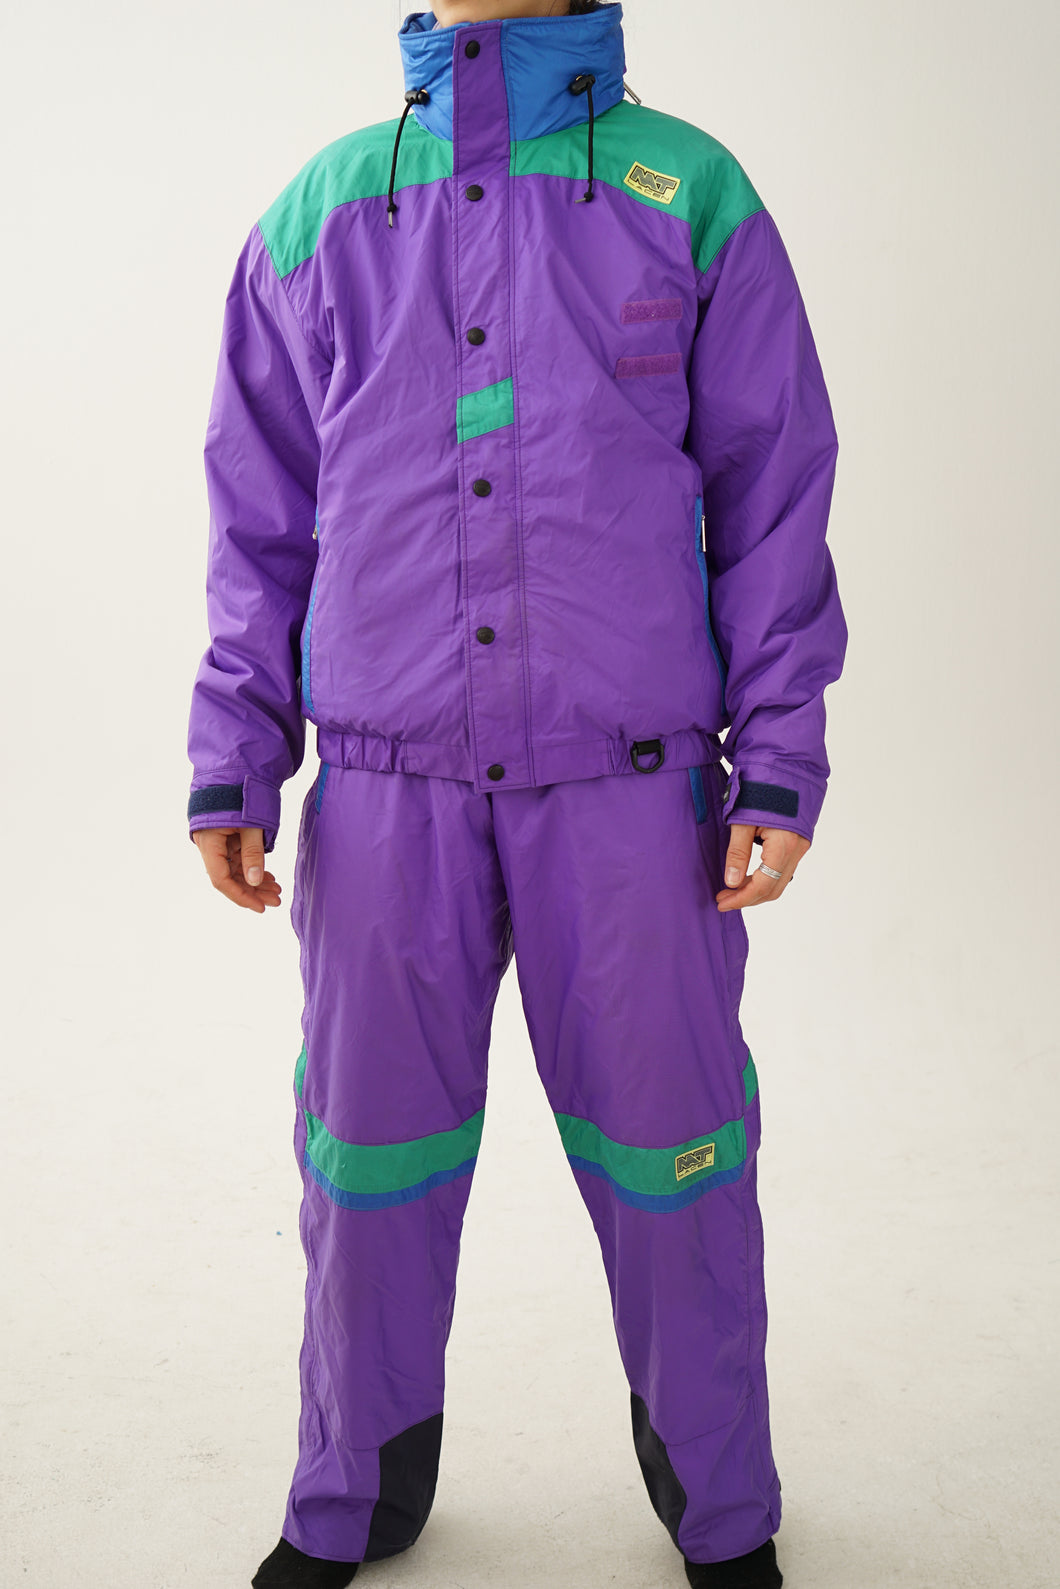 Insane vintage two piece Nat Lacen ski suit with fleece jacket, retro purple and turquoise snow suit L